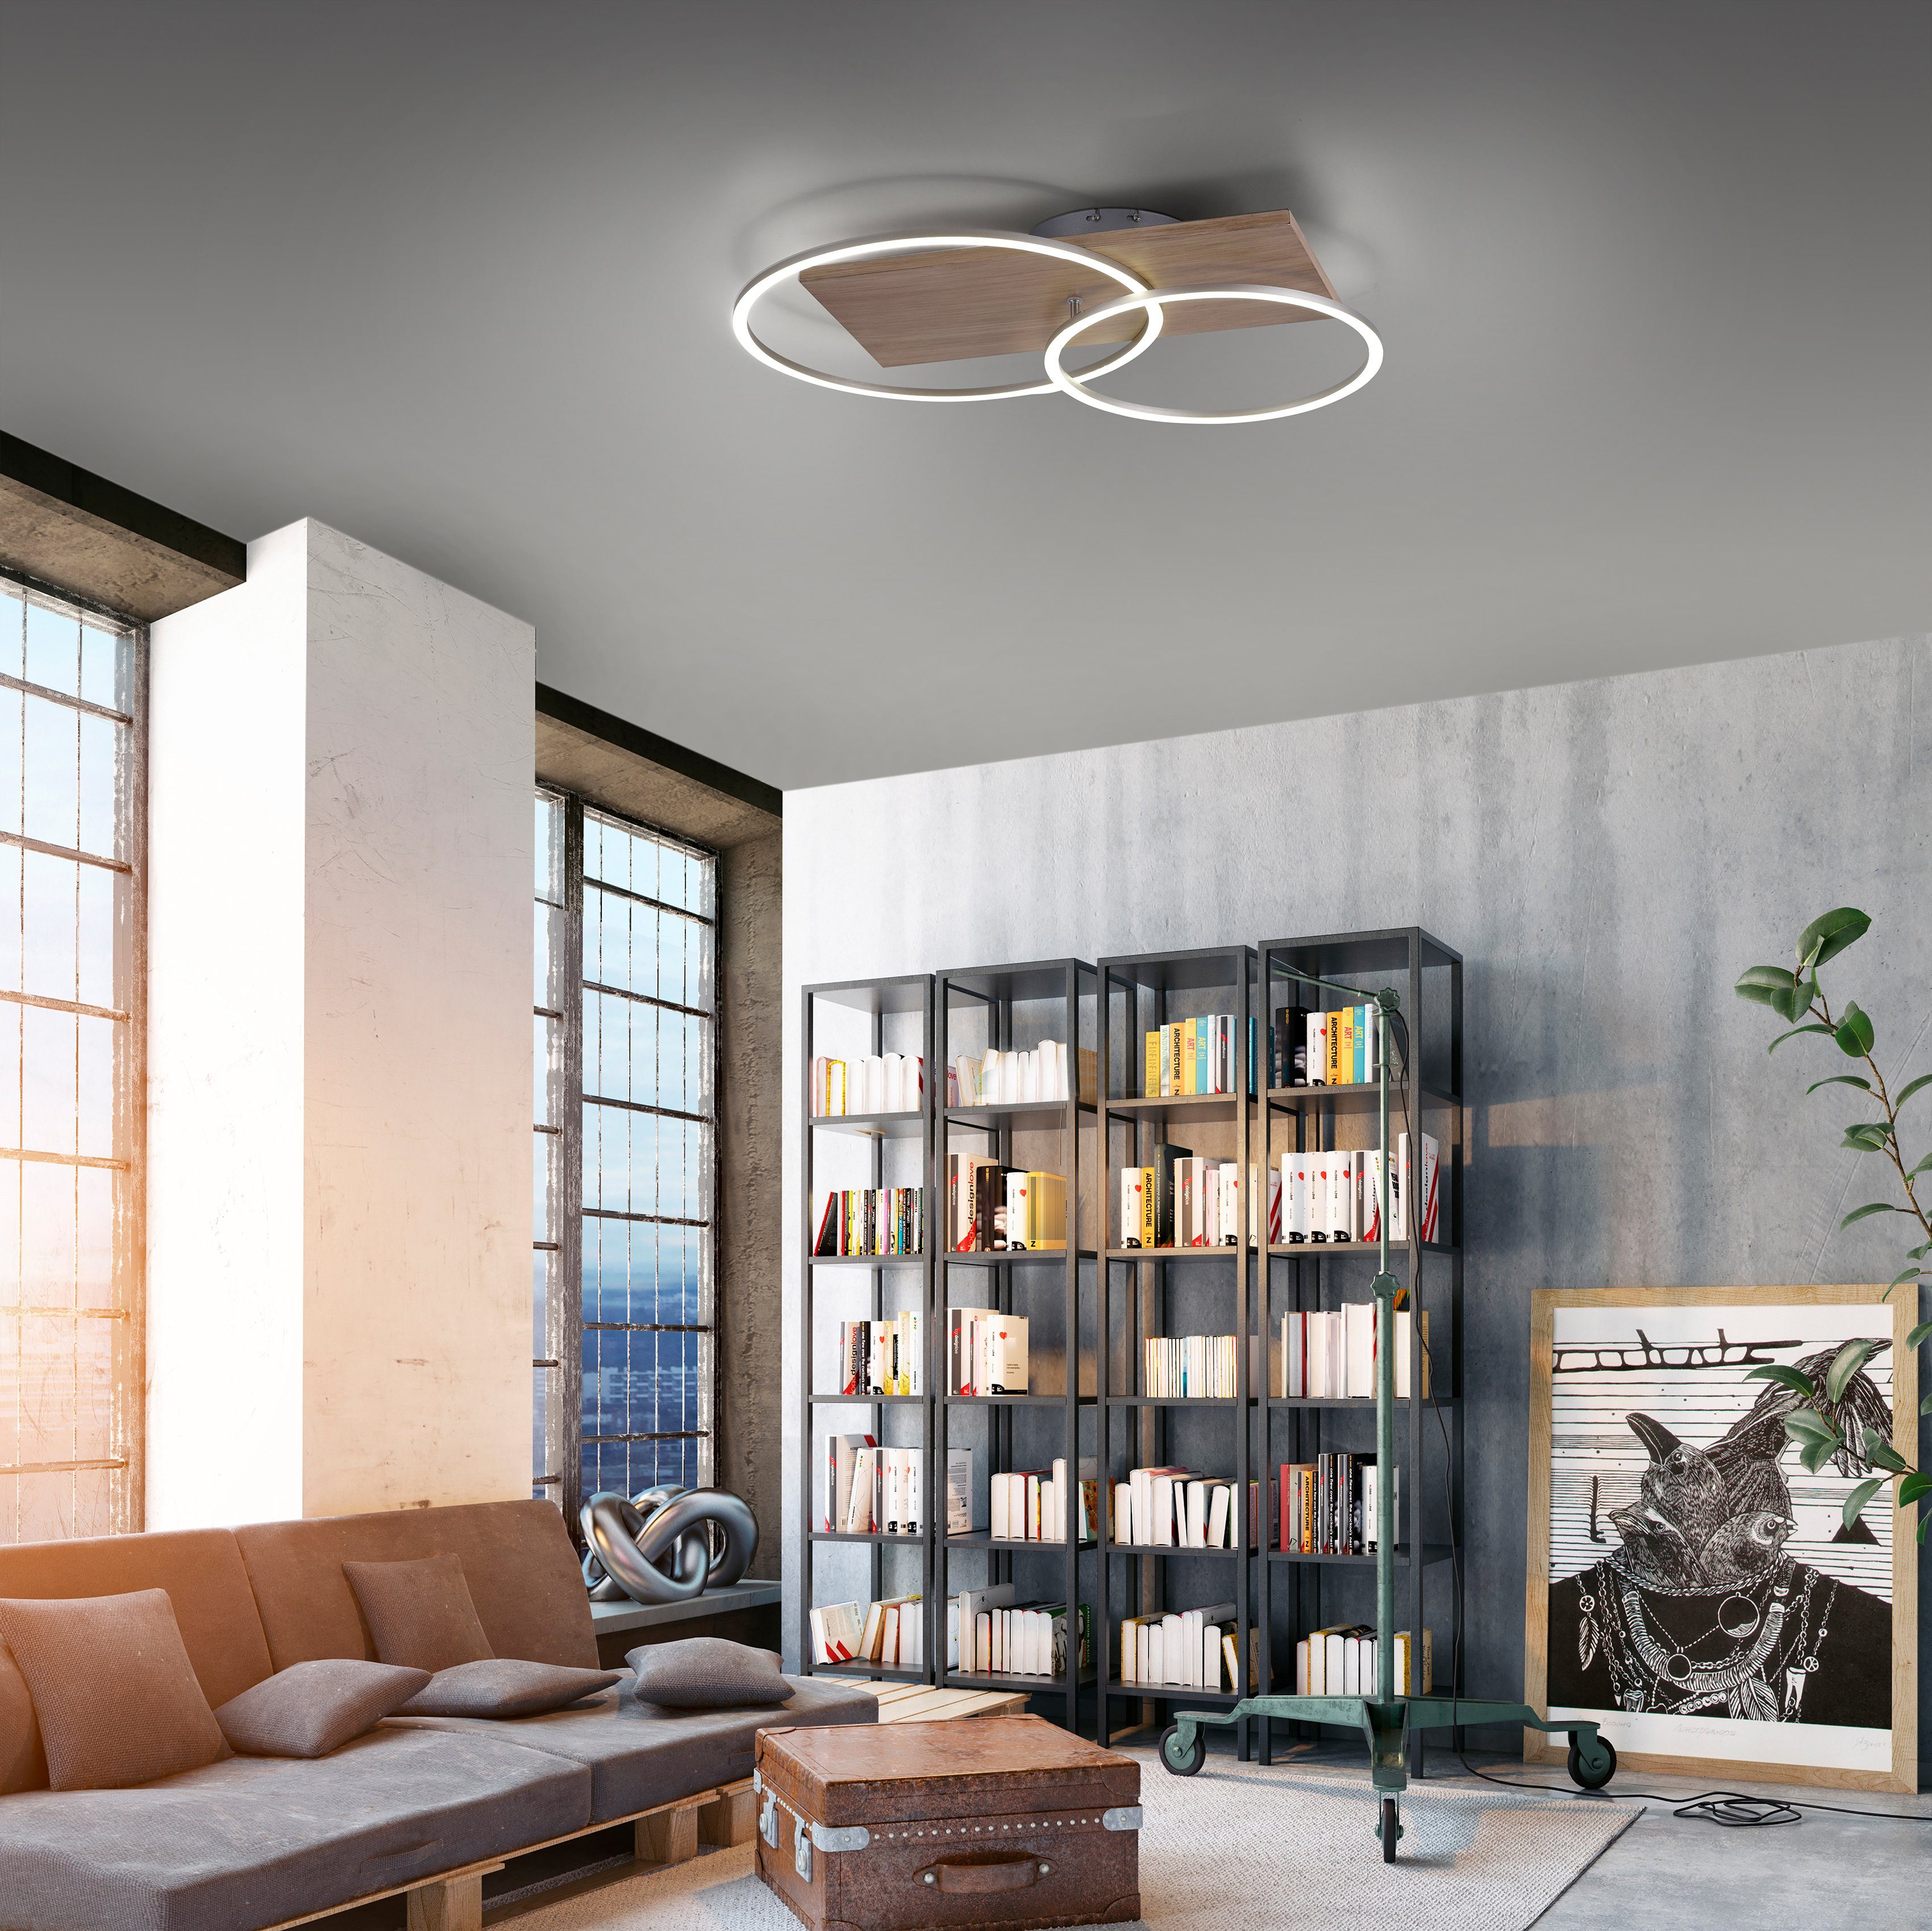 Home affaire LED Infrarotfernbedienung, mit Warmweiß, Dimmfunktion, LED inkl. Farbtemperatursteuerung, fest Pommerby, dimmbar Deckenleuchte integriert